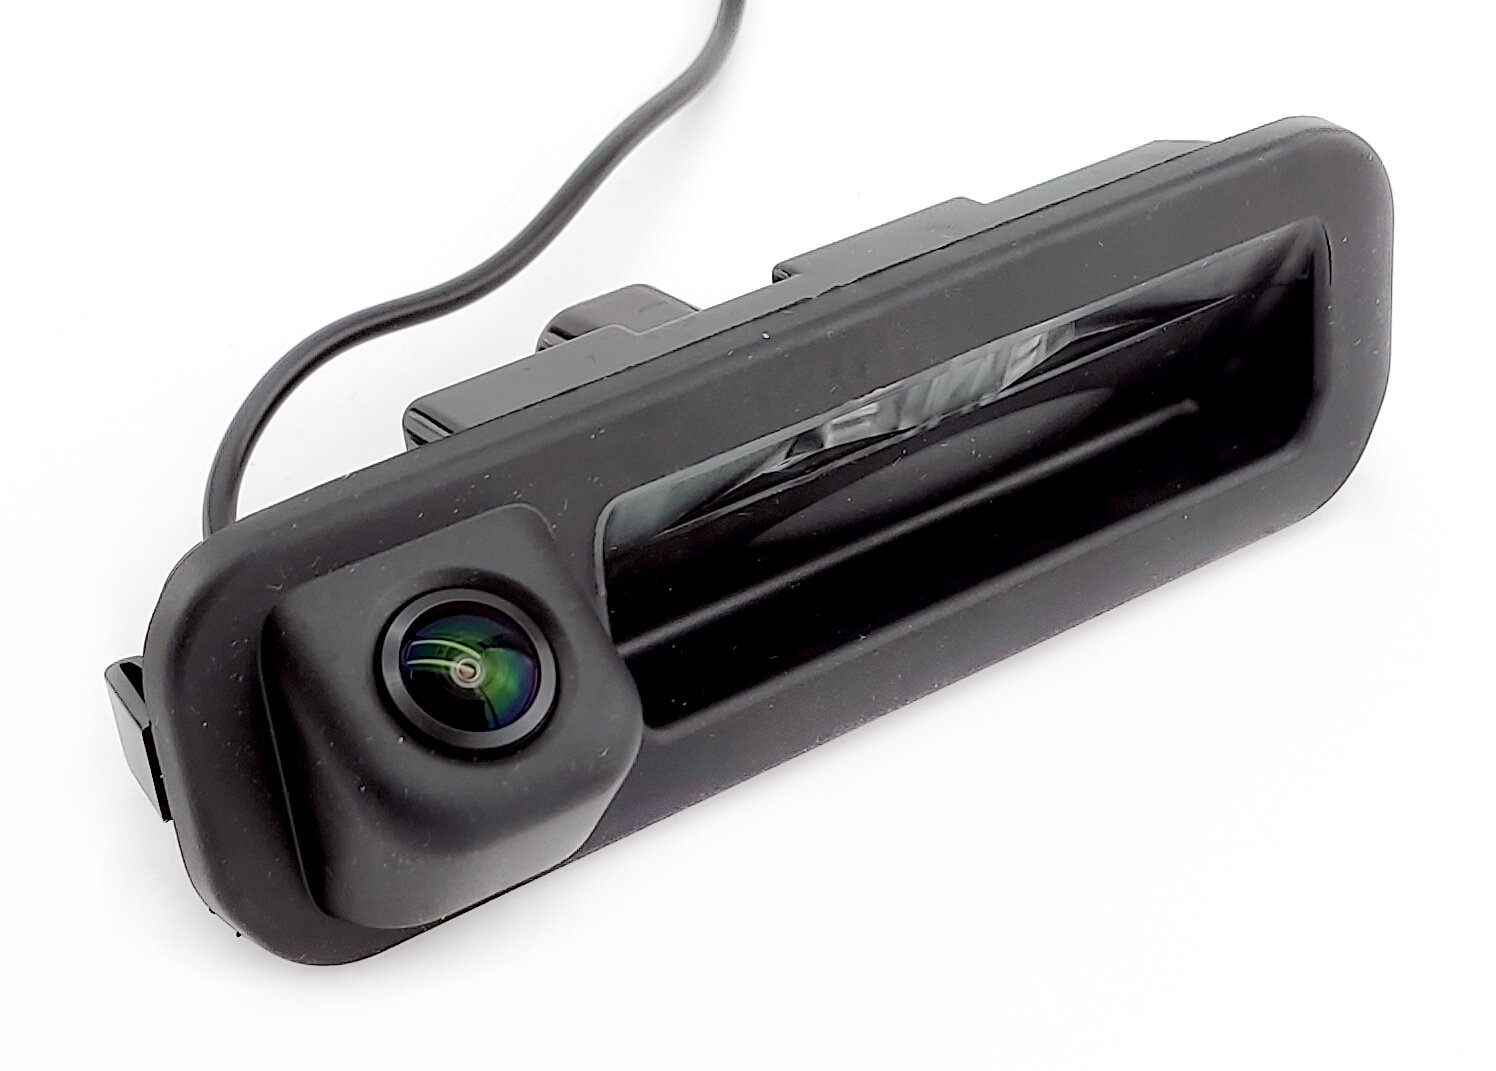 Камера заднего вида AHD 1080p, с отключаемой разметкой, cam-109 Ford Focus 3 (2011-2017) в ручку багажника